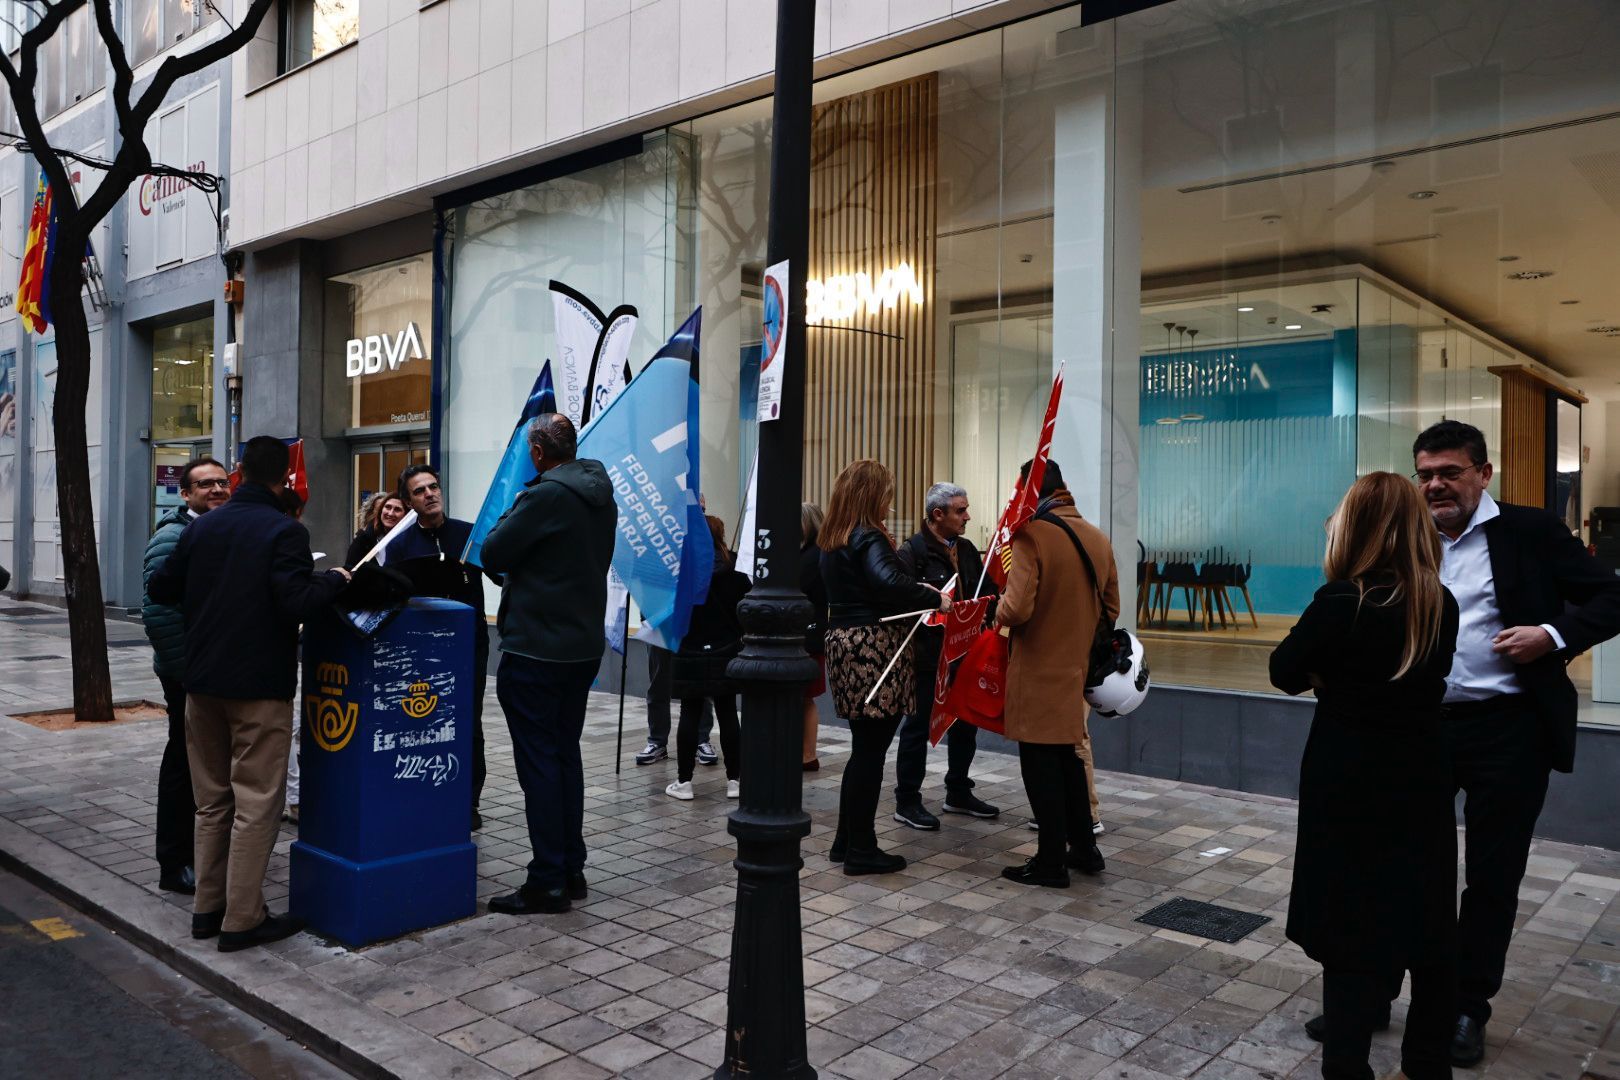 Los empleados de banca protestan ante la sedes de las entidades en València para reclamar una subida de sueldo